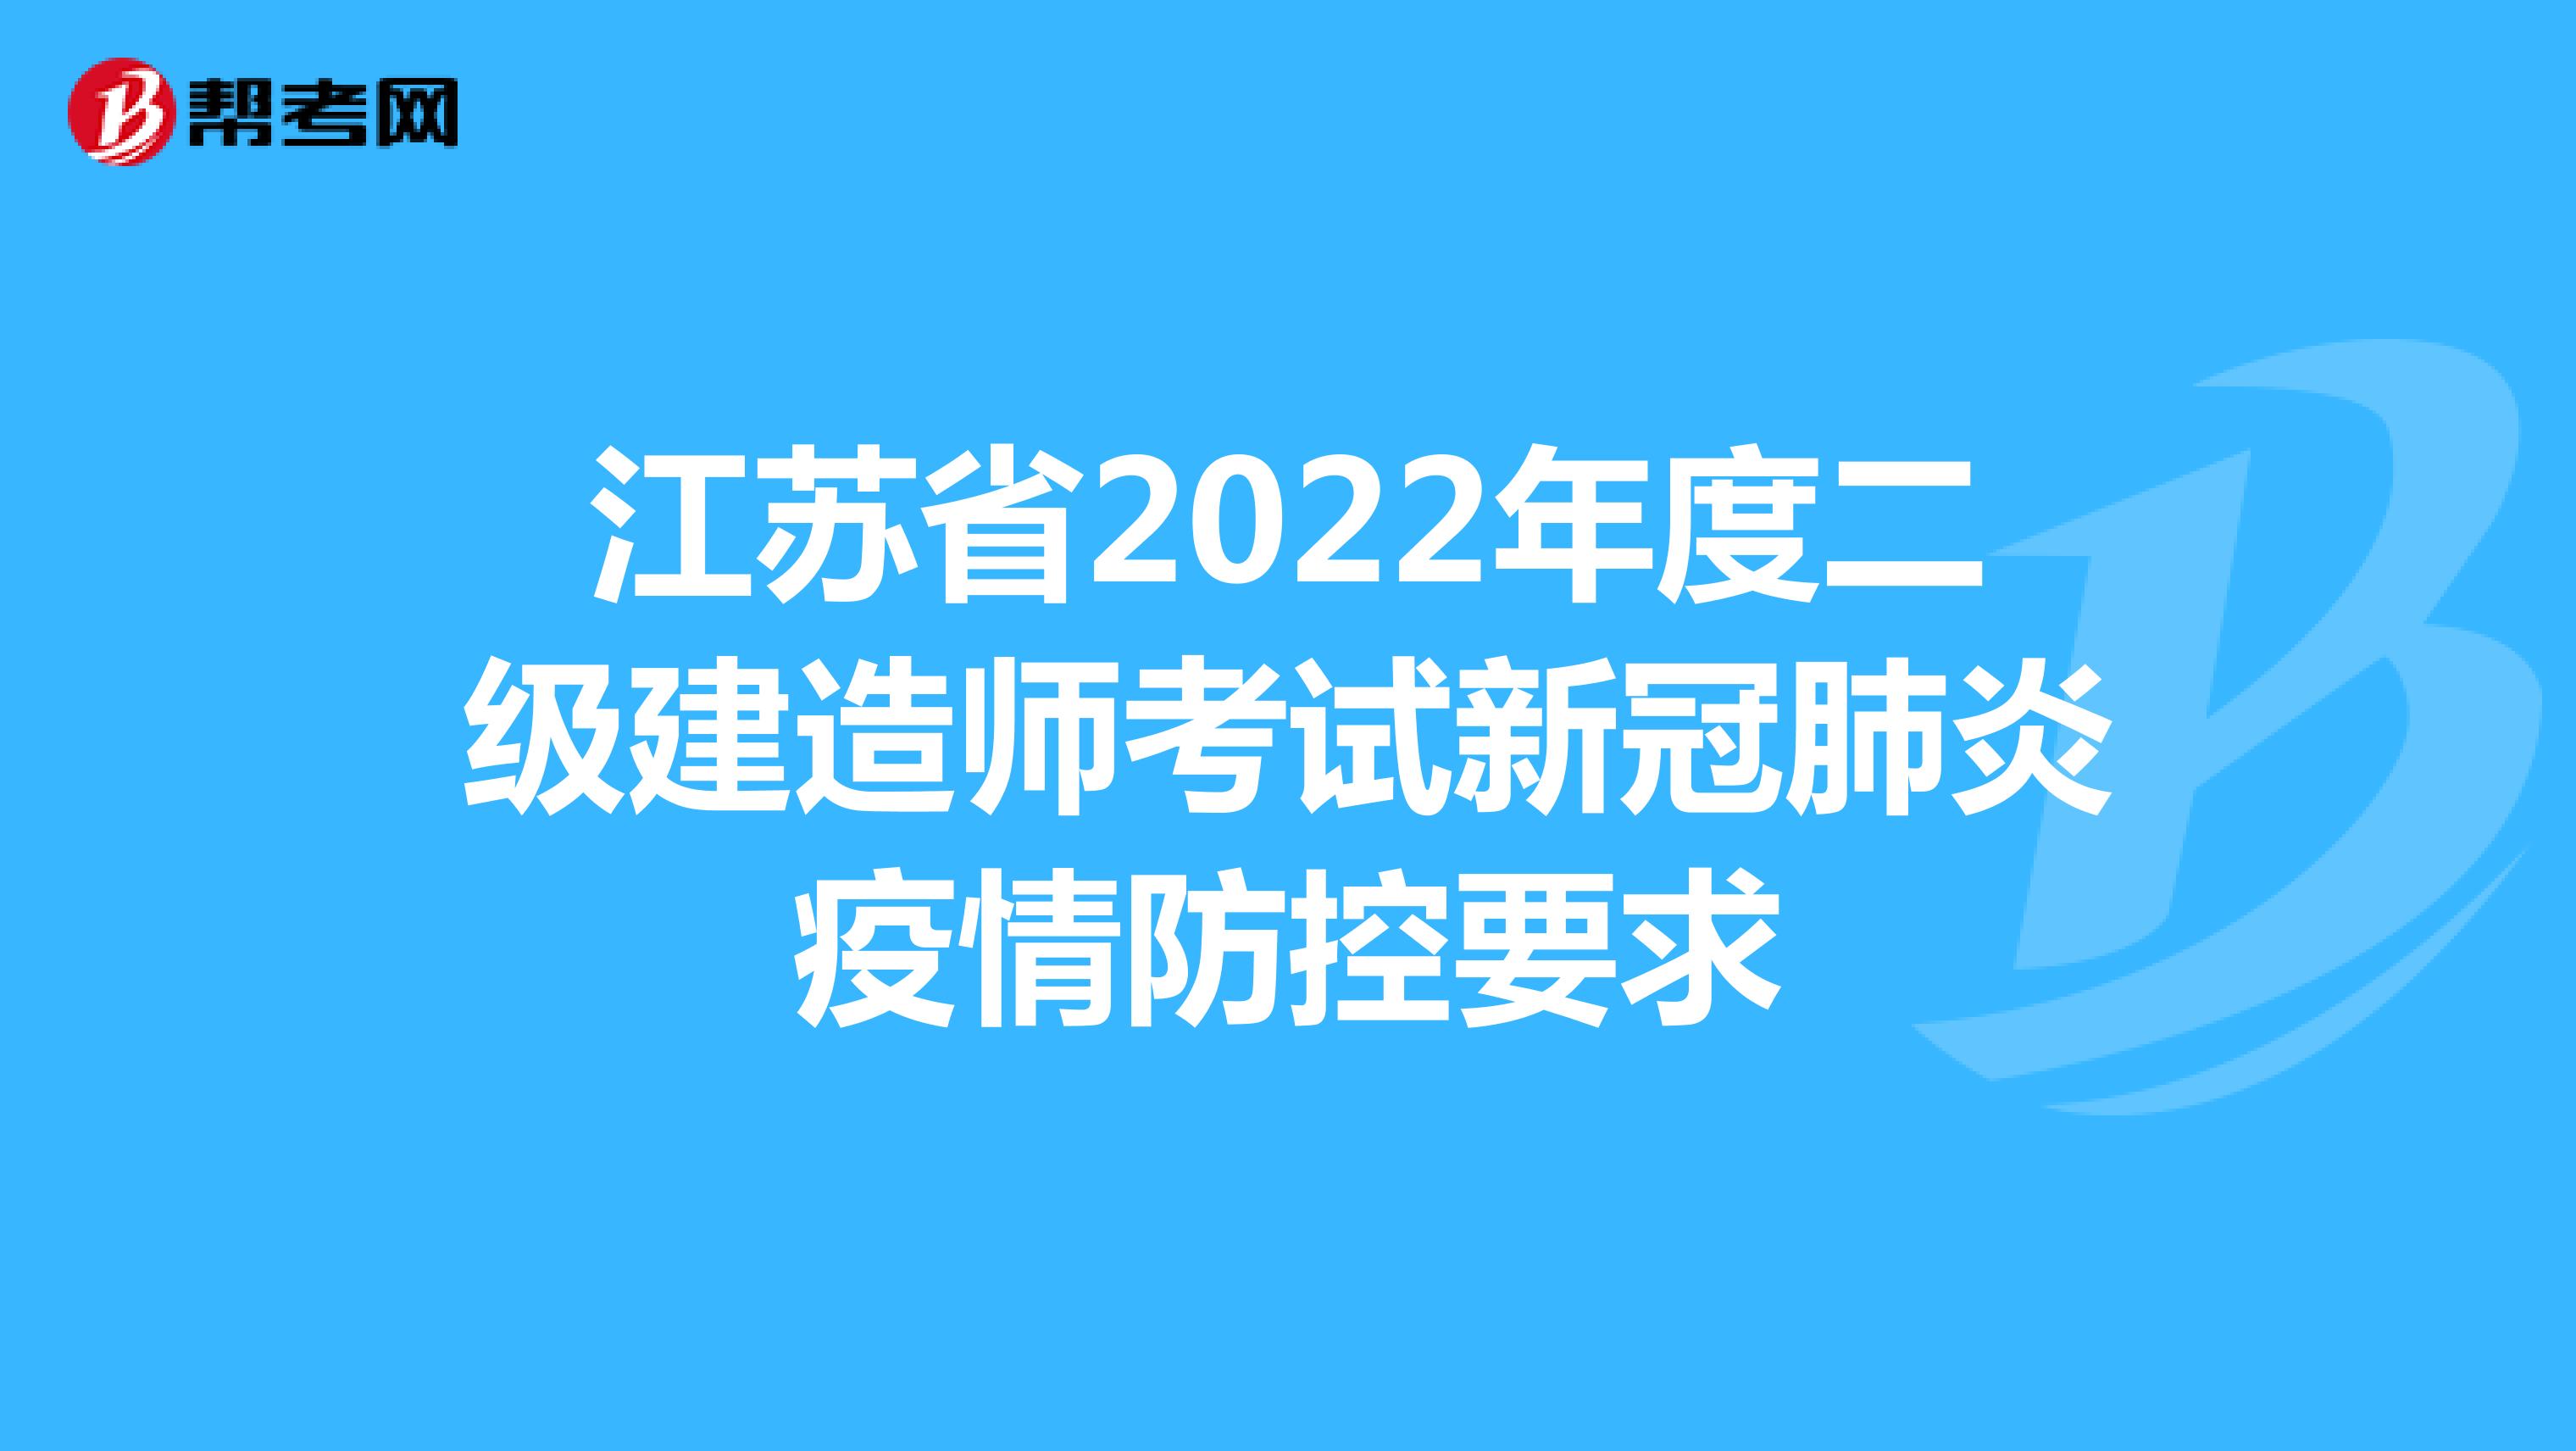 江苏省2022年度二级建造师考试新冠肺炎疫情防控要求